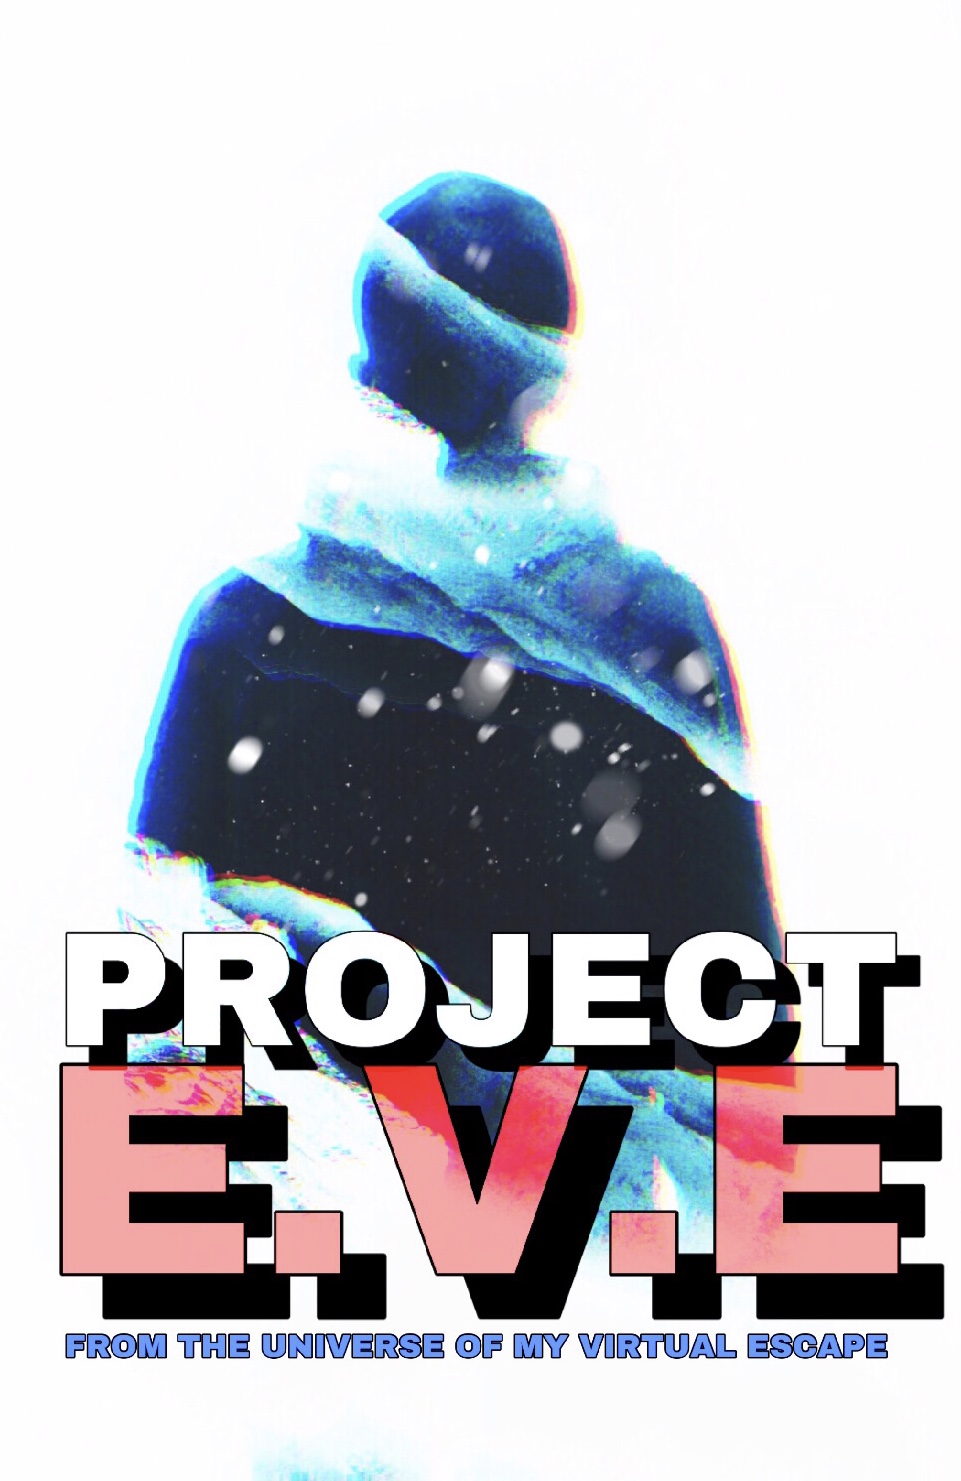 Project E.V.E